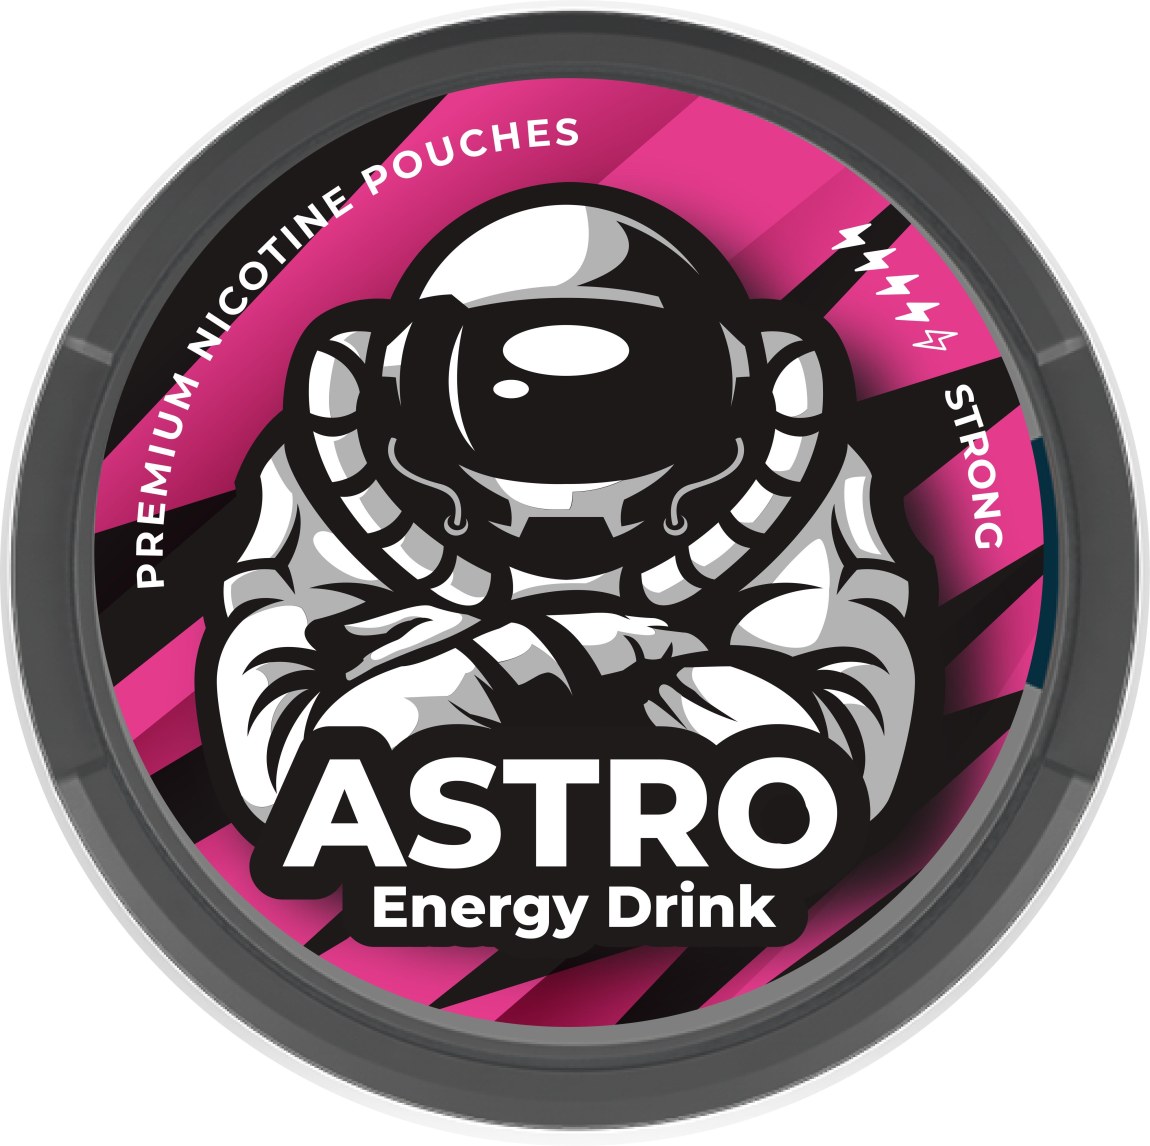 Astro Energy drink - Astro